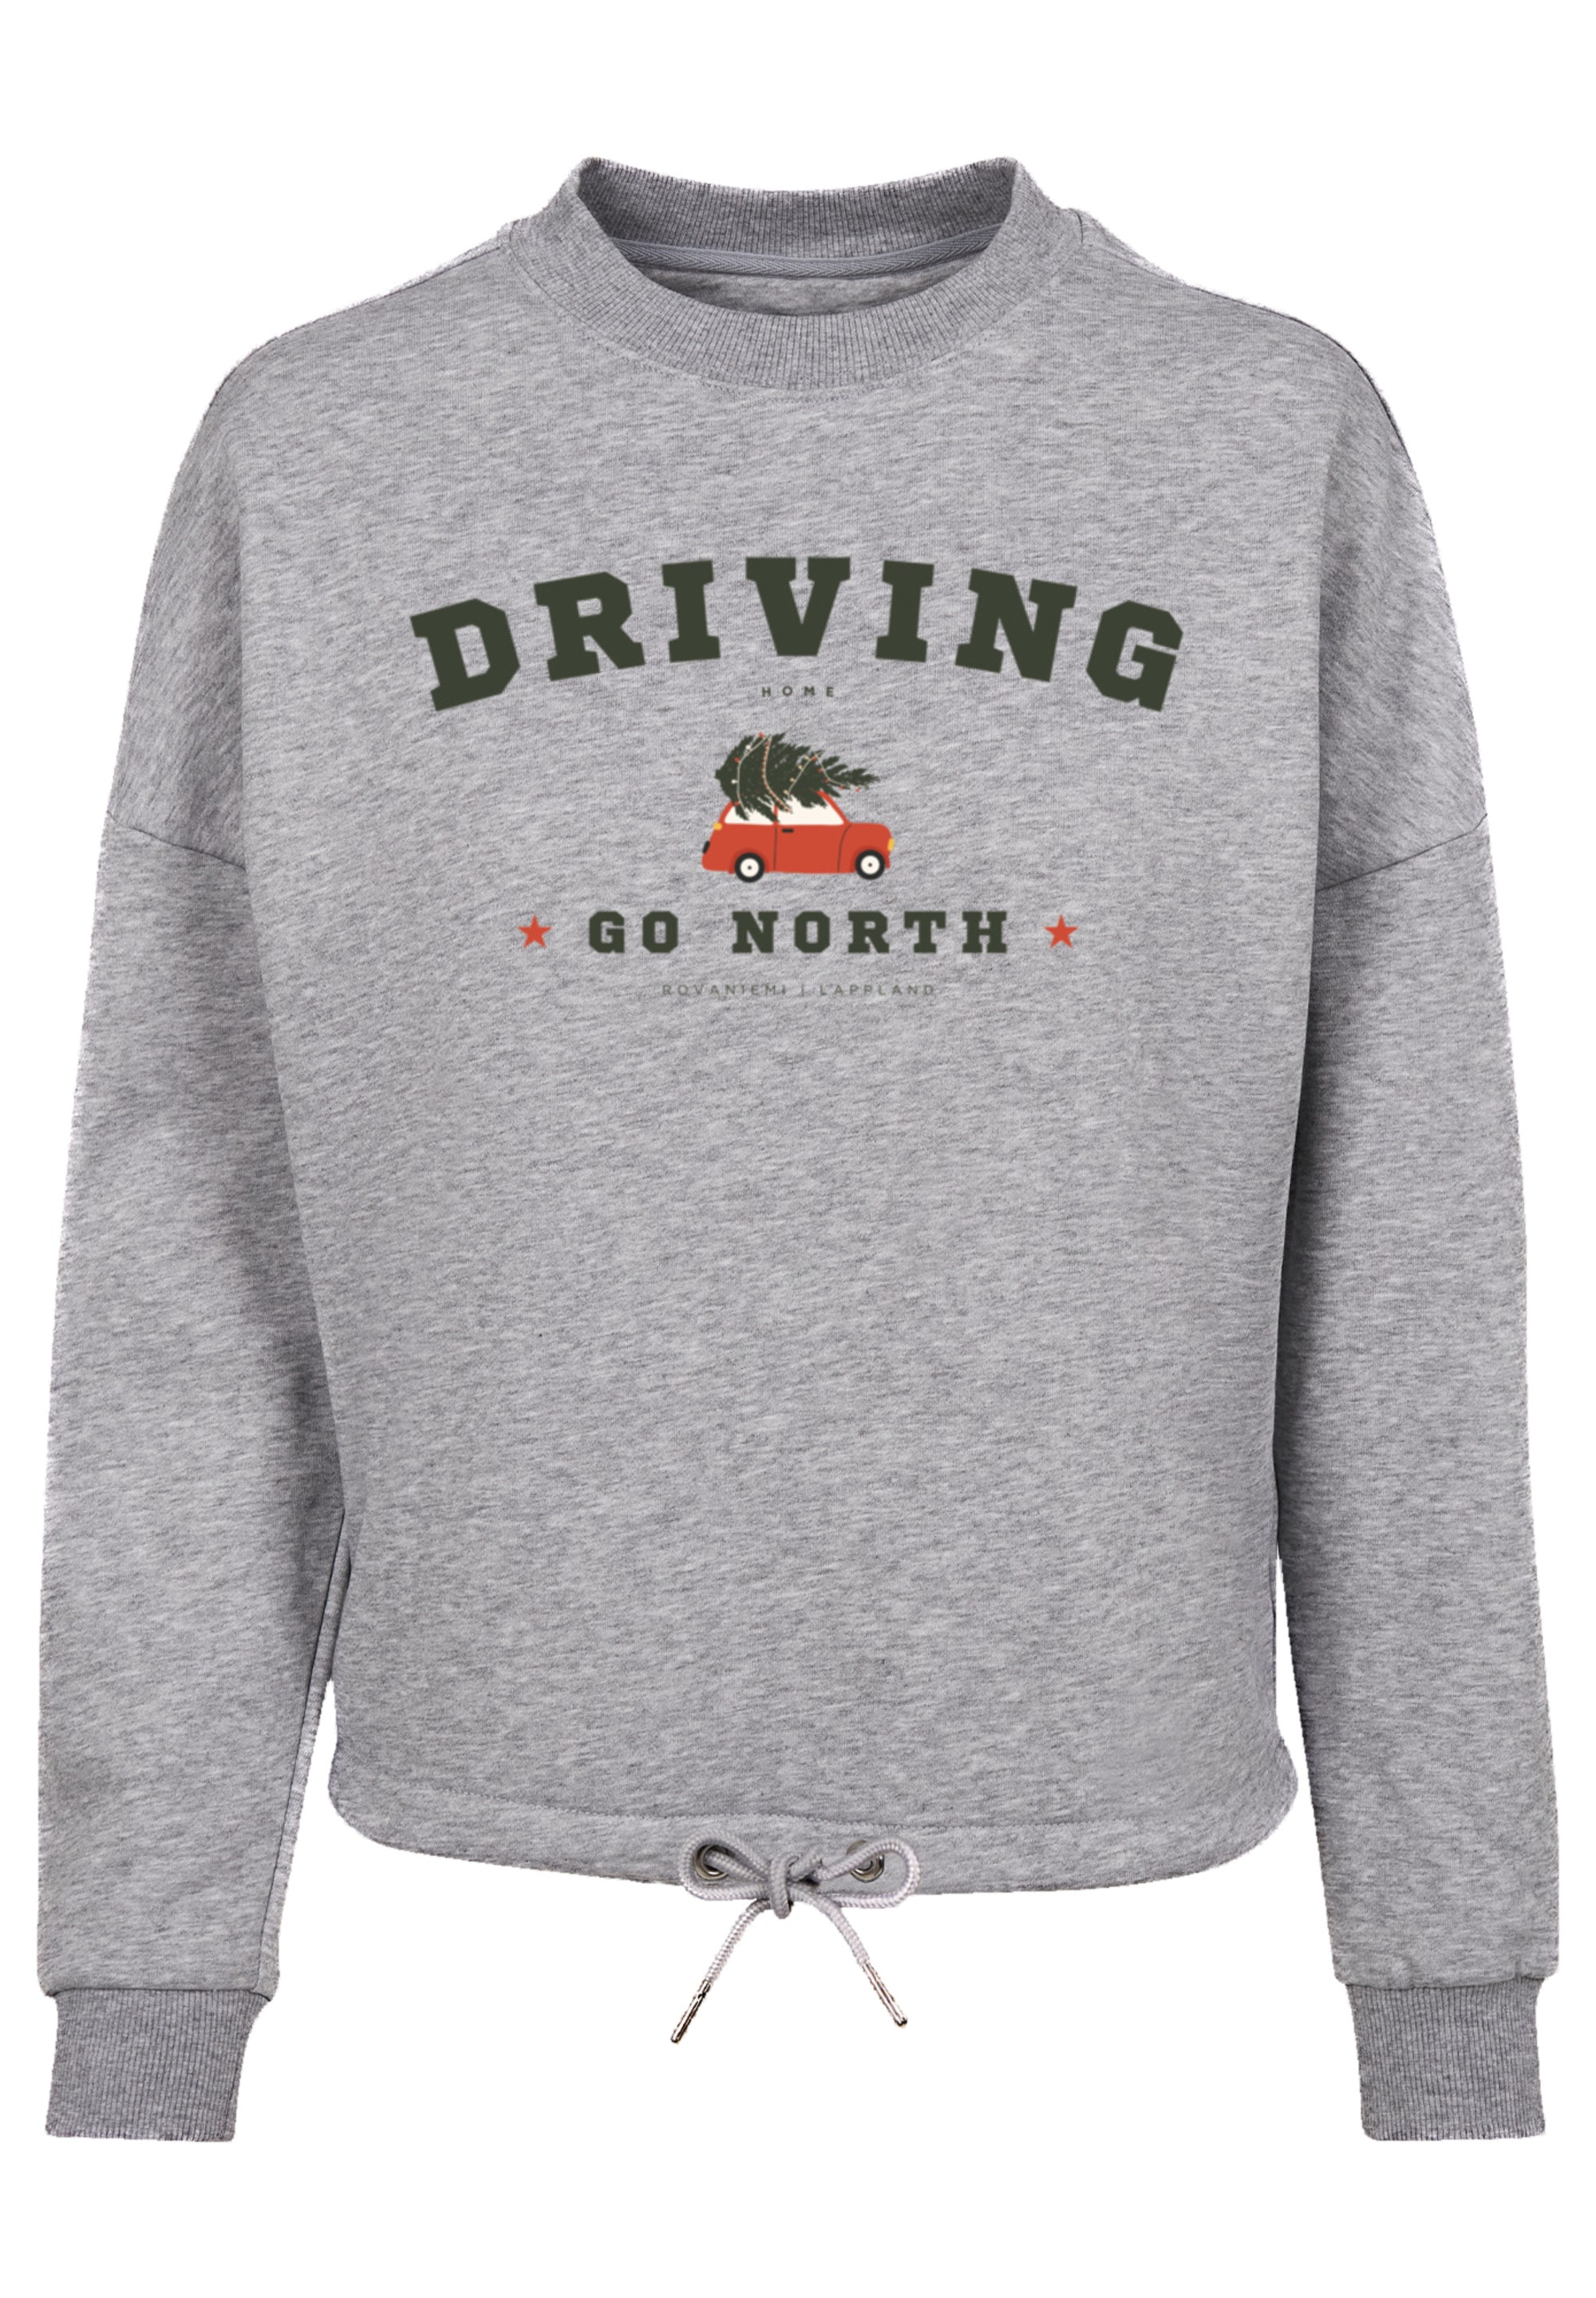 Sweatshirt Geschenk, walking Logo Weihnachten, | I\'m online »Driving Home Weihnachten«, kaufen F4NT4STIC